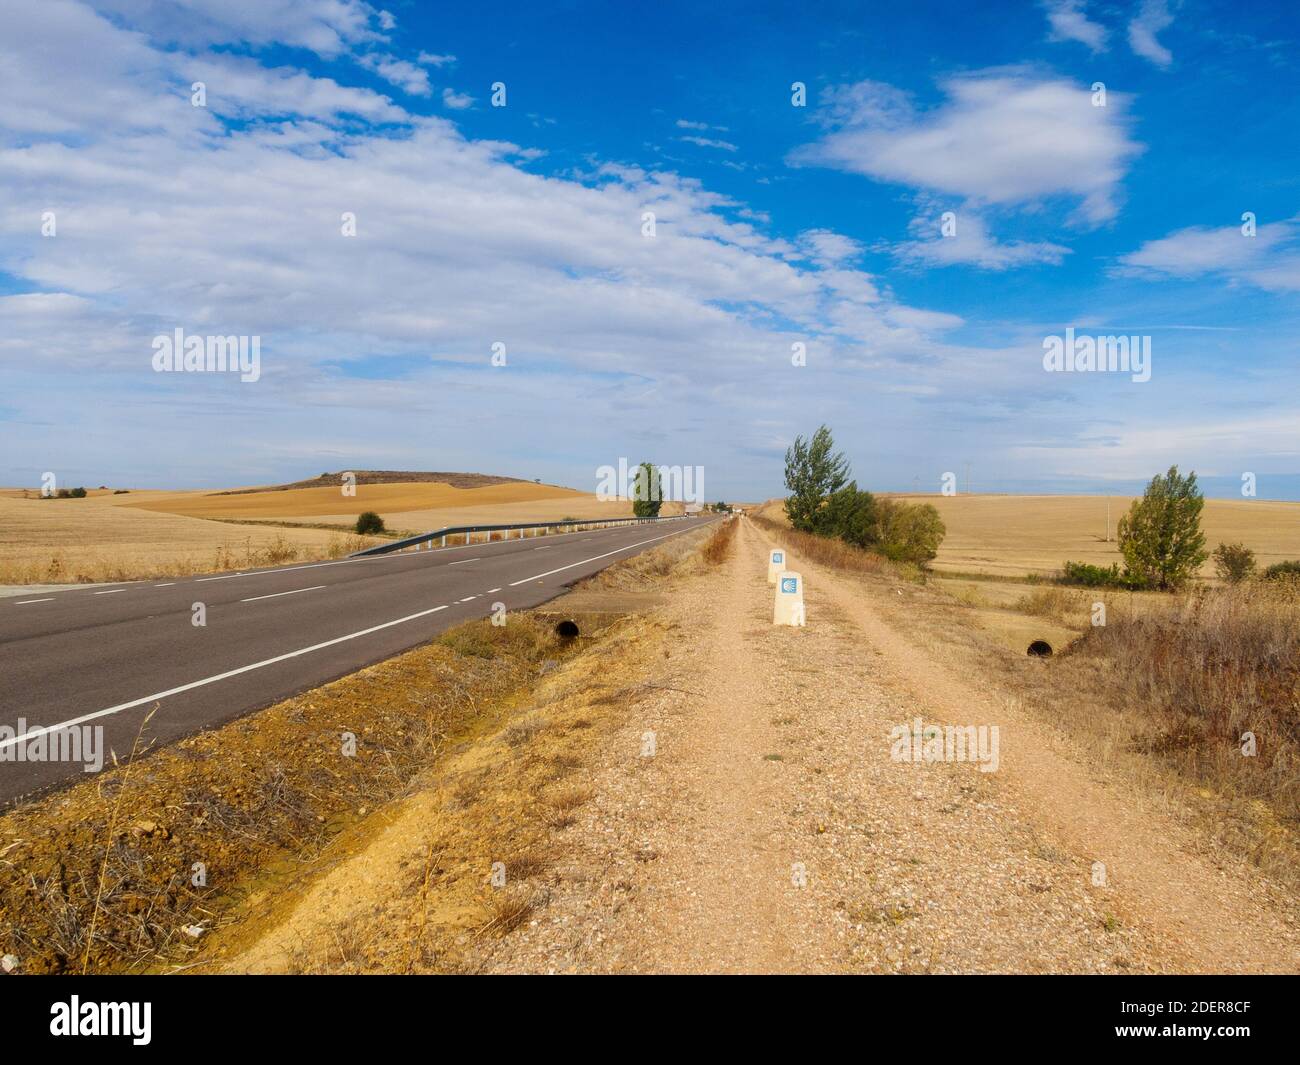 Camino along the road - Villalcazar de Sirga, Castile and Leon, Spain Stock Photo